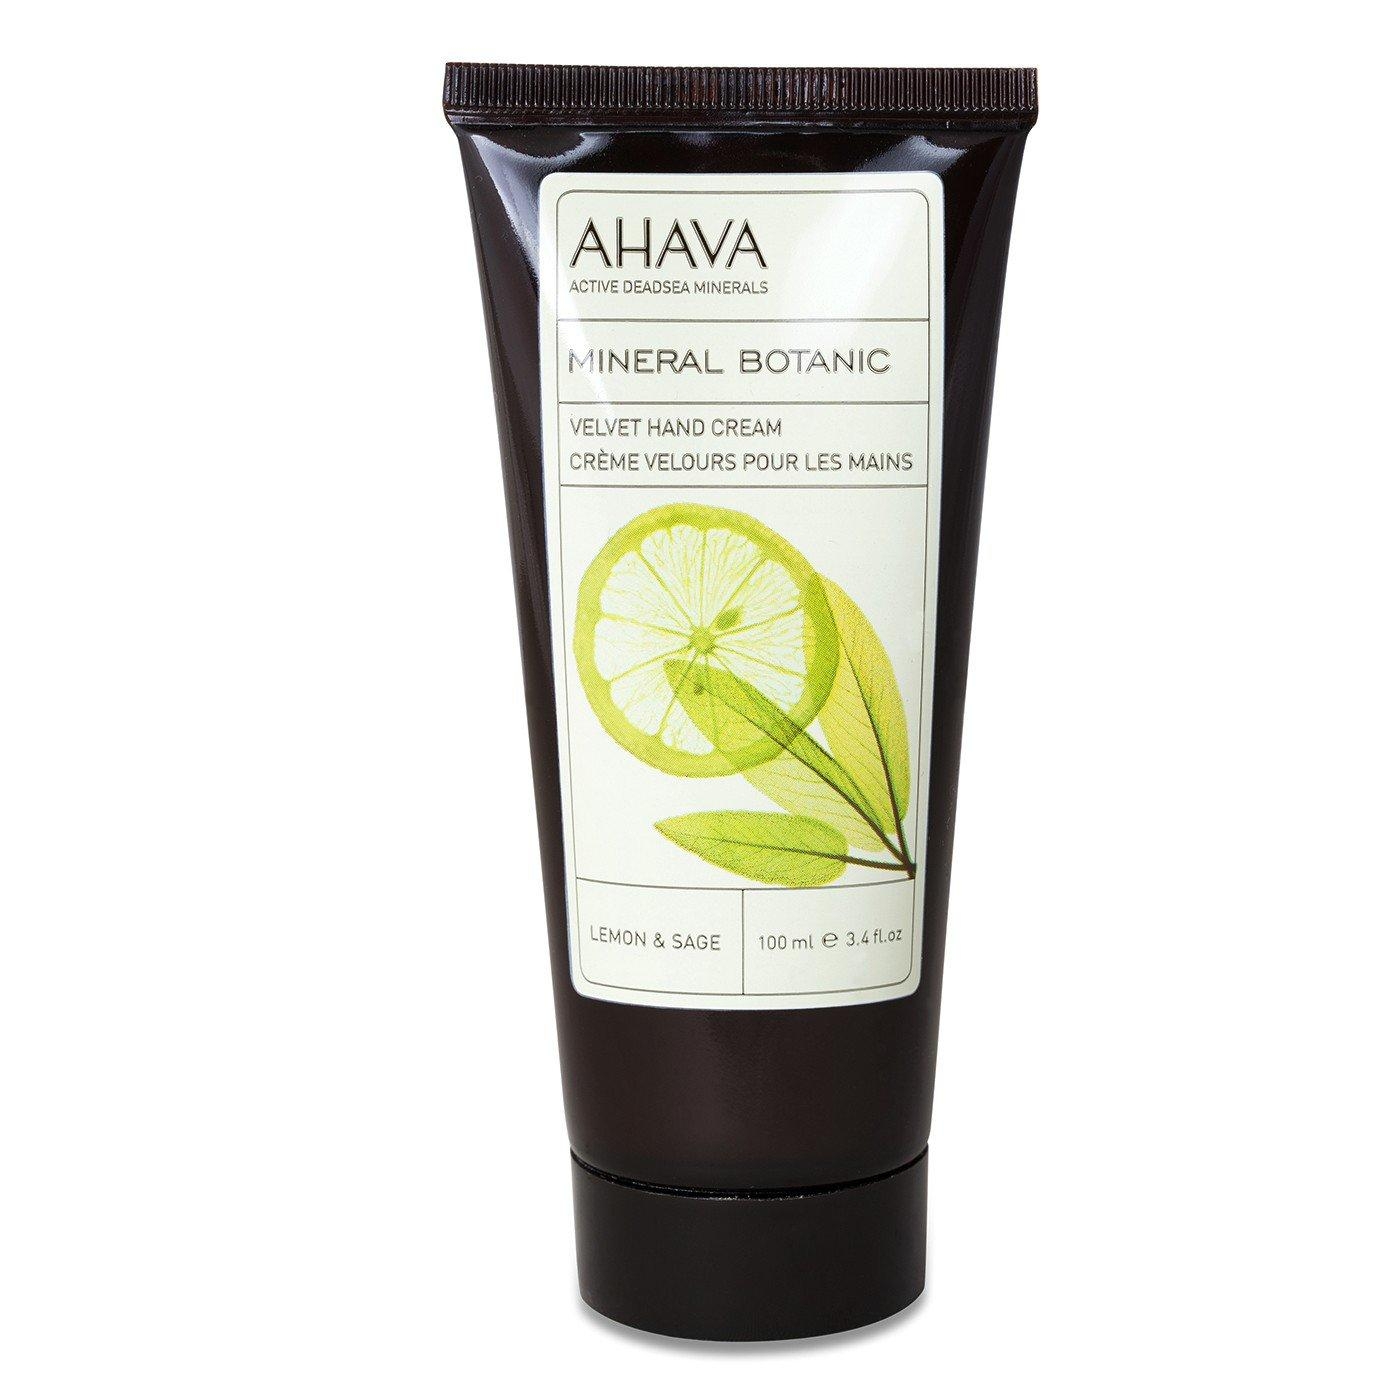 AHAVA Mineral Botanic Velvet Hand Cream – Lemon and Sage - 1